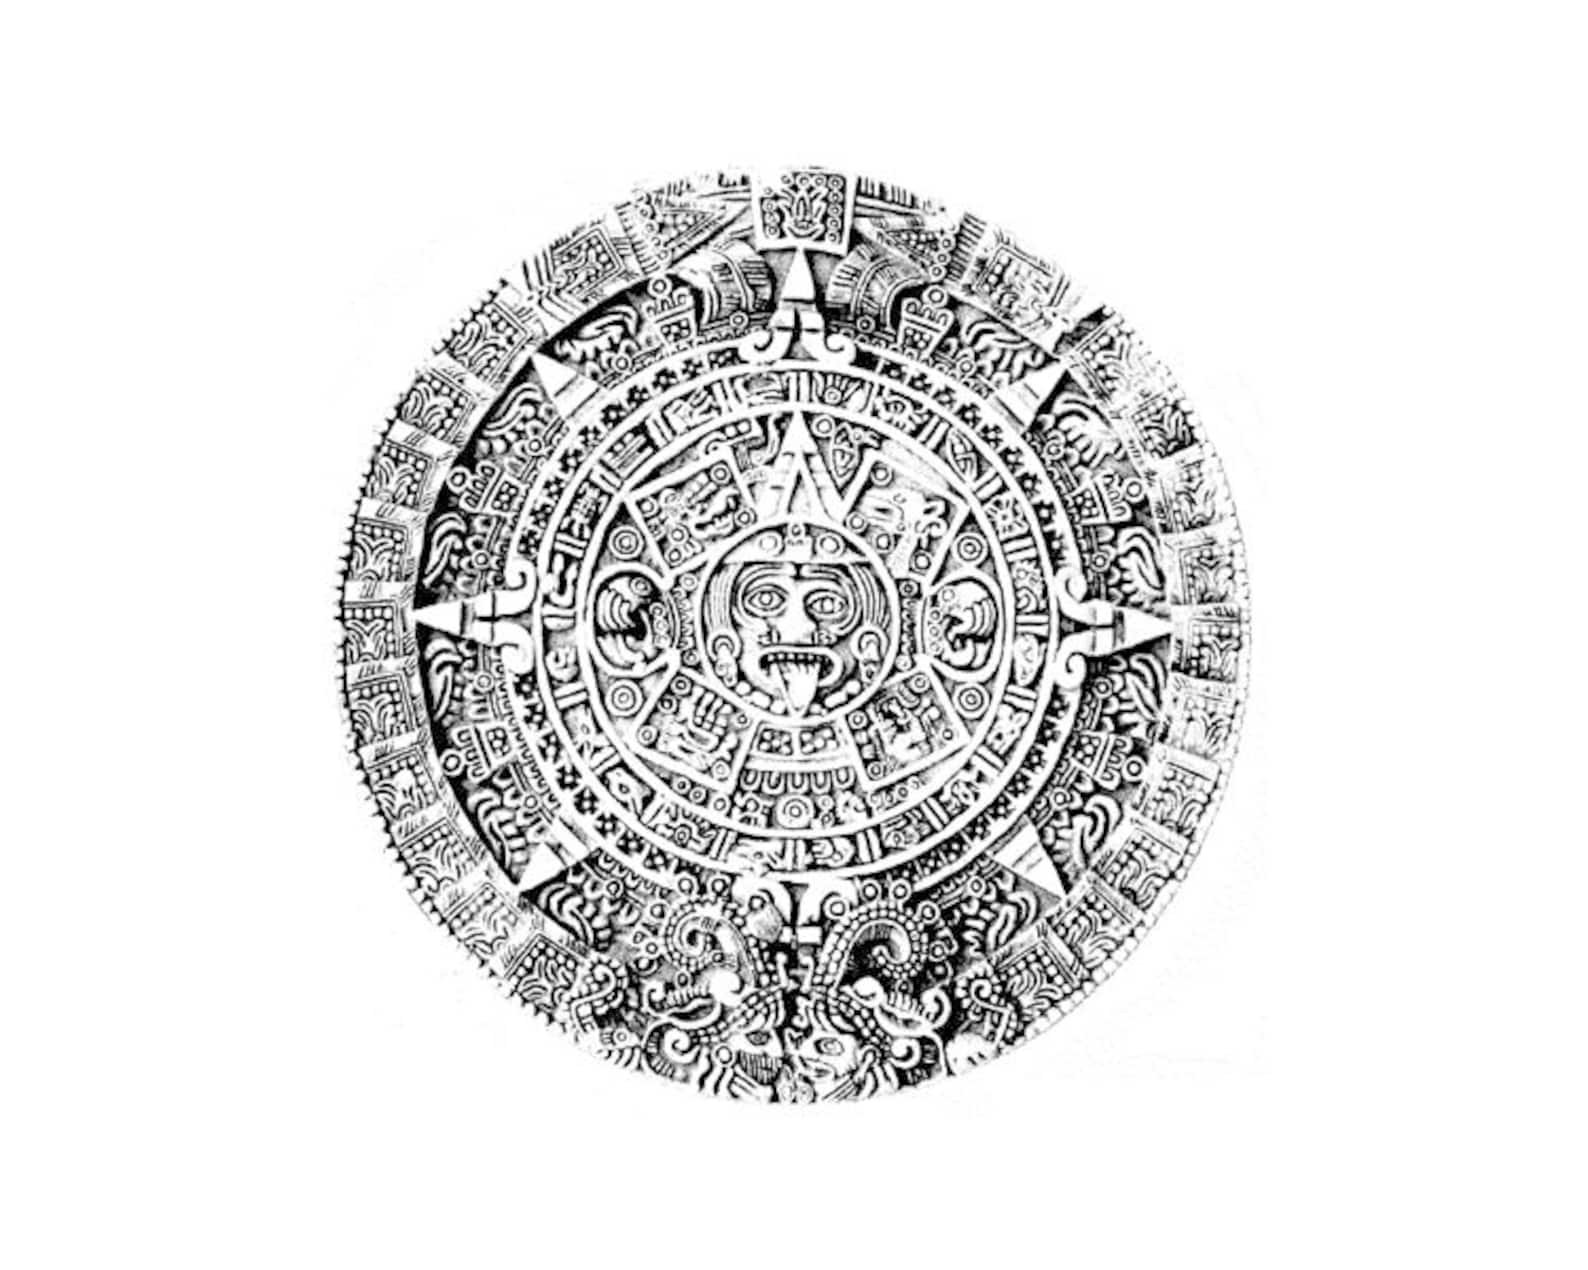 Календарь ма й я слушать. Камень солнца ацтеков. Солнечный календарь Майя. Колеса Ацтек. Круглый календарь Майя.